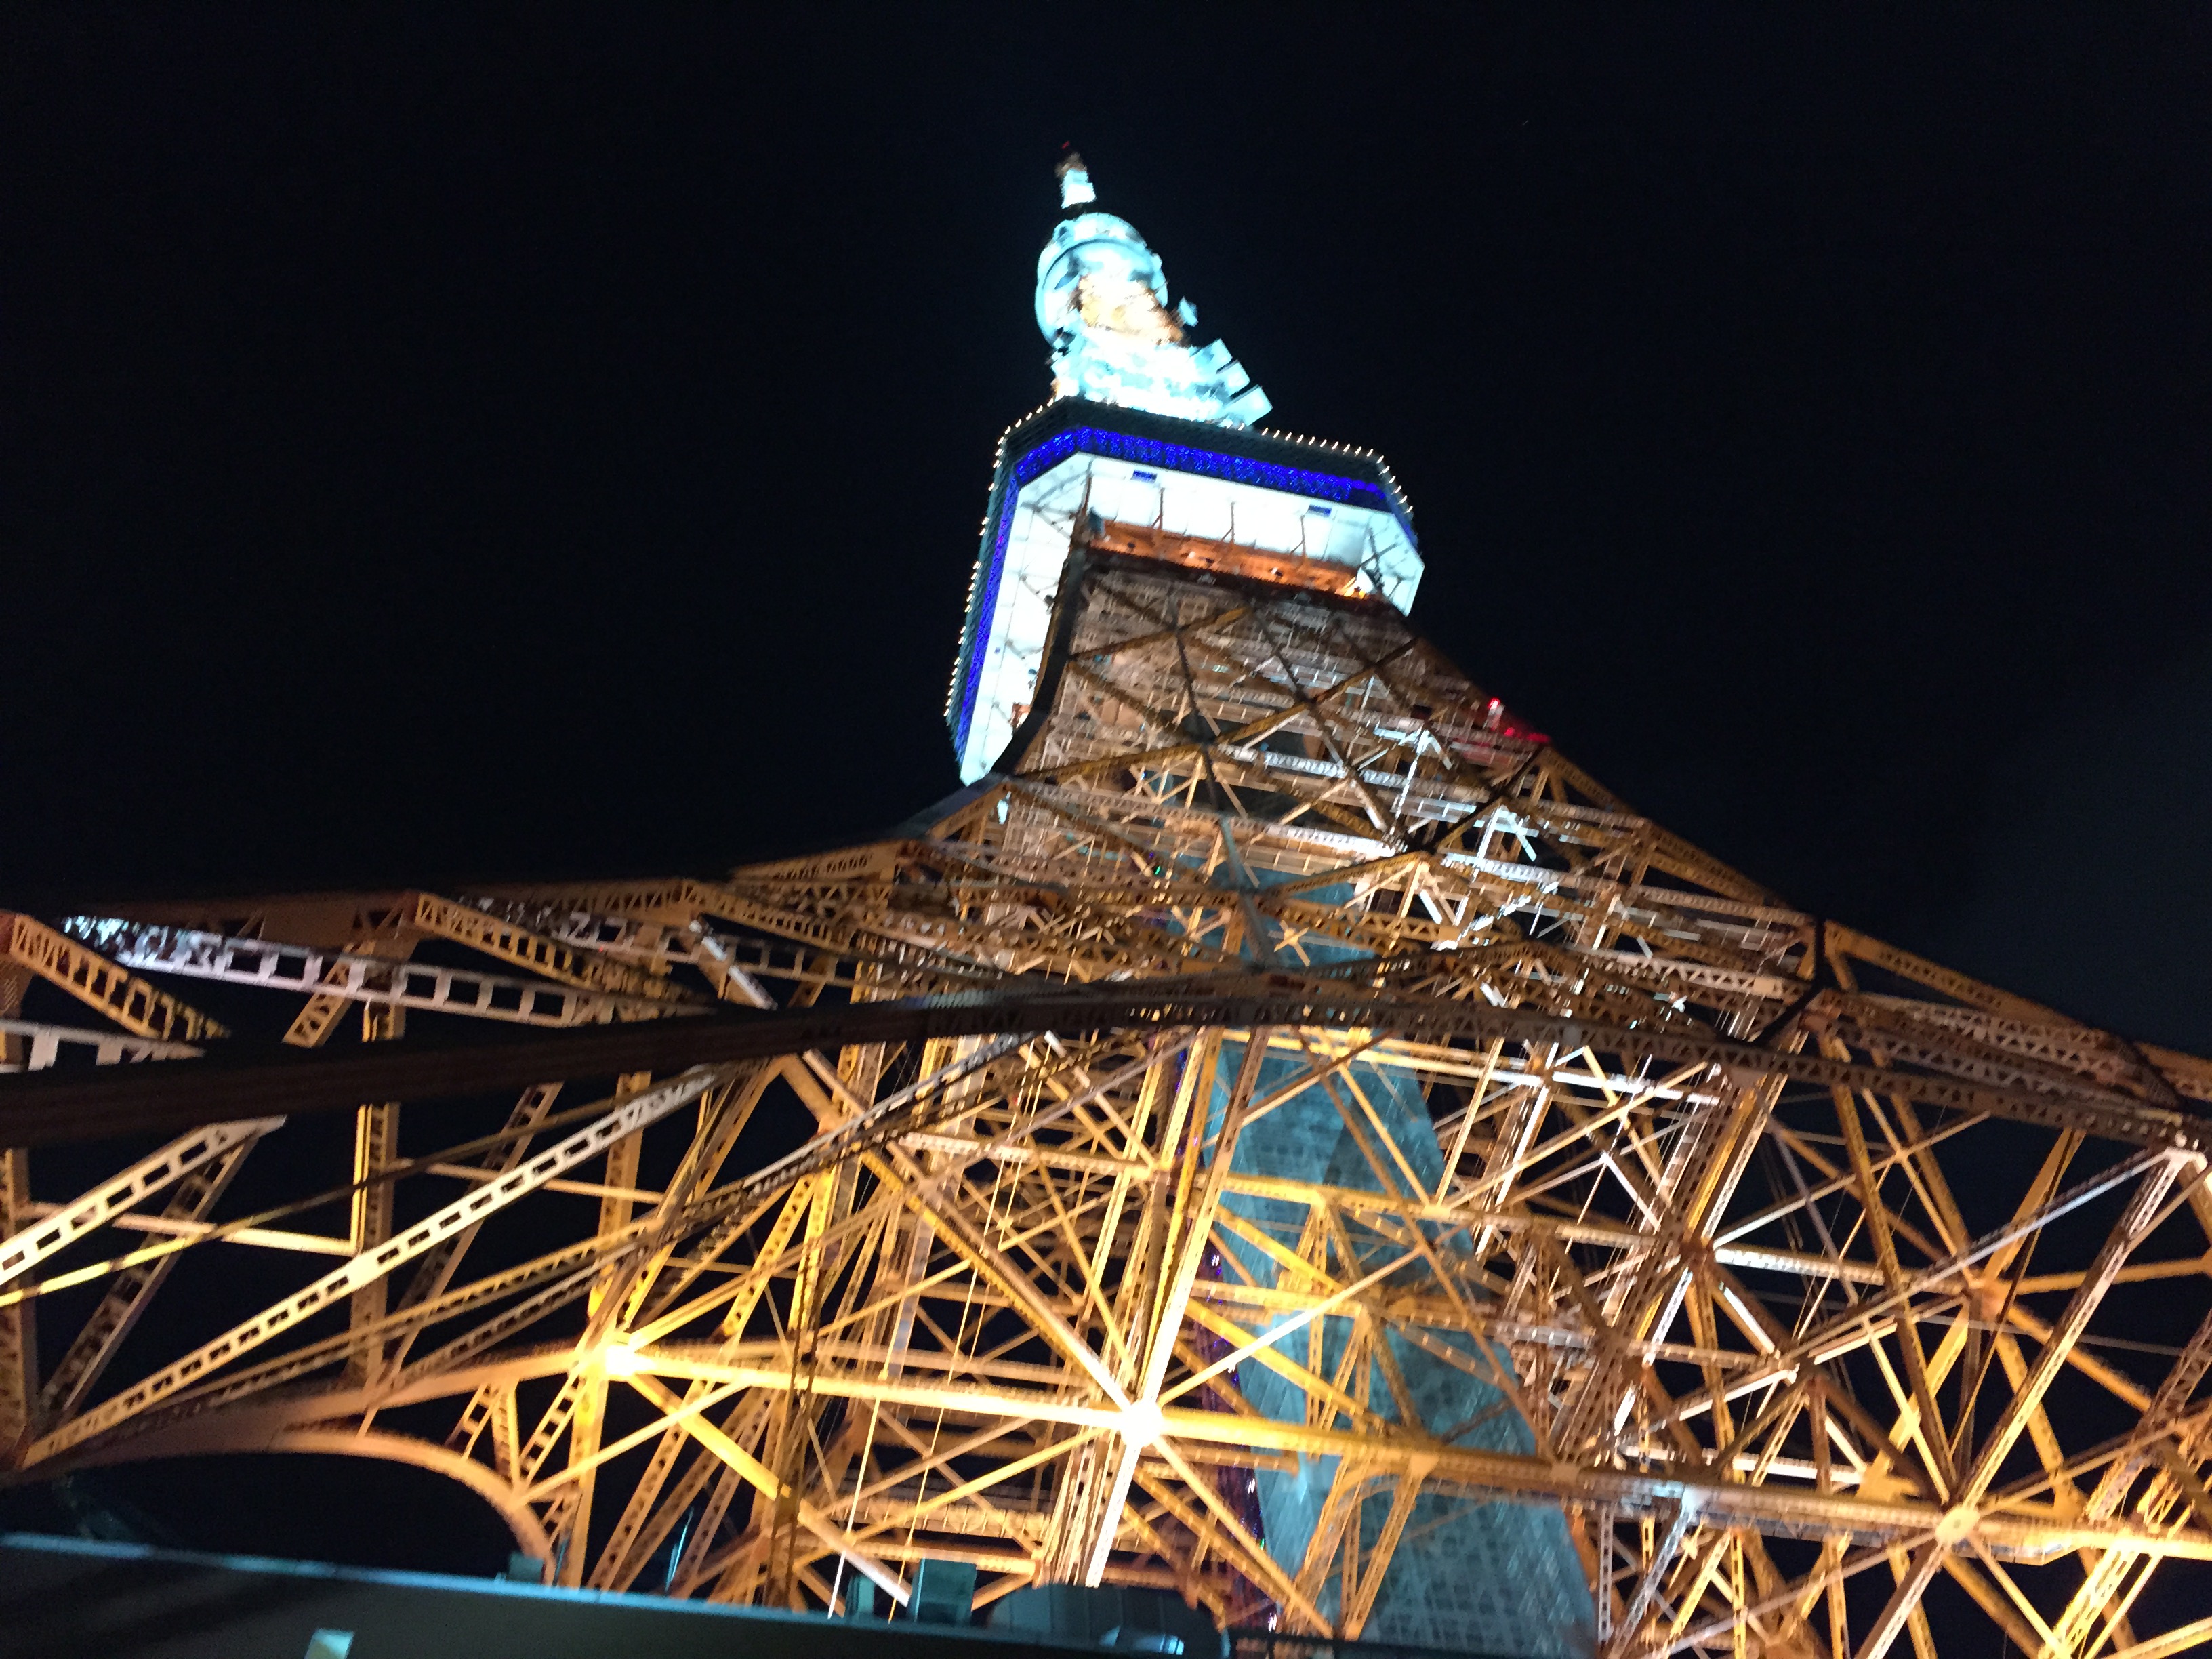 東京タワーハイボールガーデン ビアガーデン に行ってきました